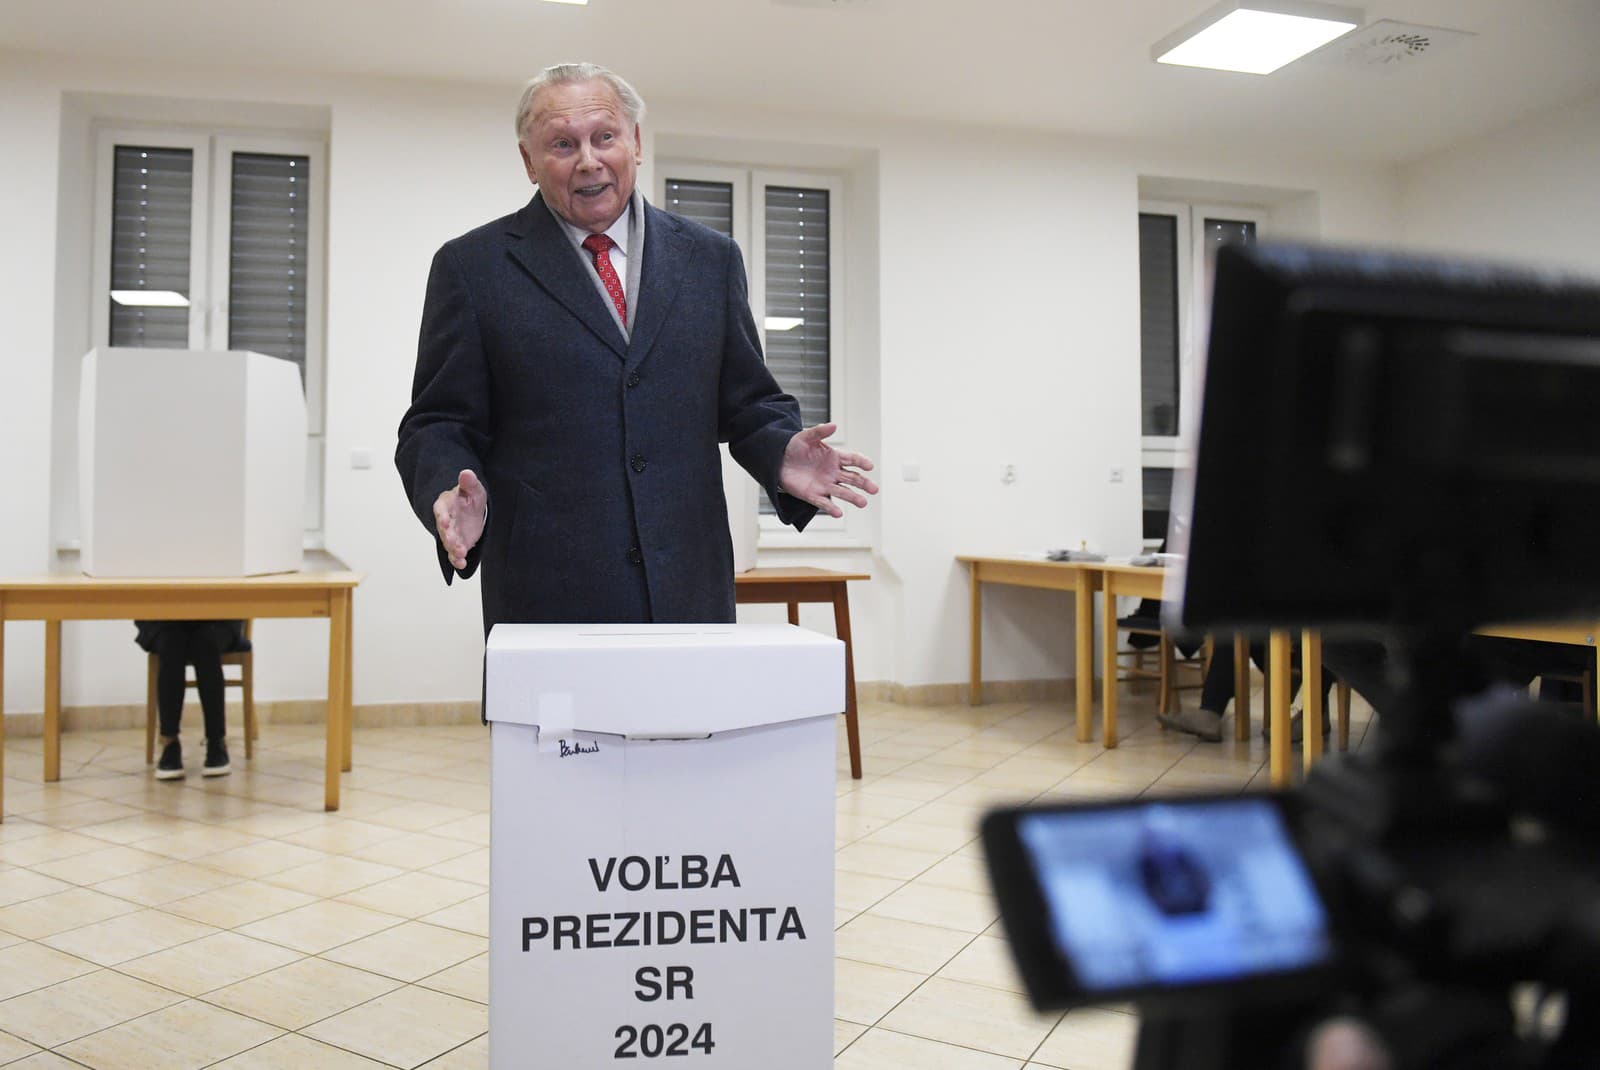 Svoj hlas v sobotňajšom prvom kole prezidentských volieb odovzdal aj bývalý prezident Rudolf Schuster